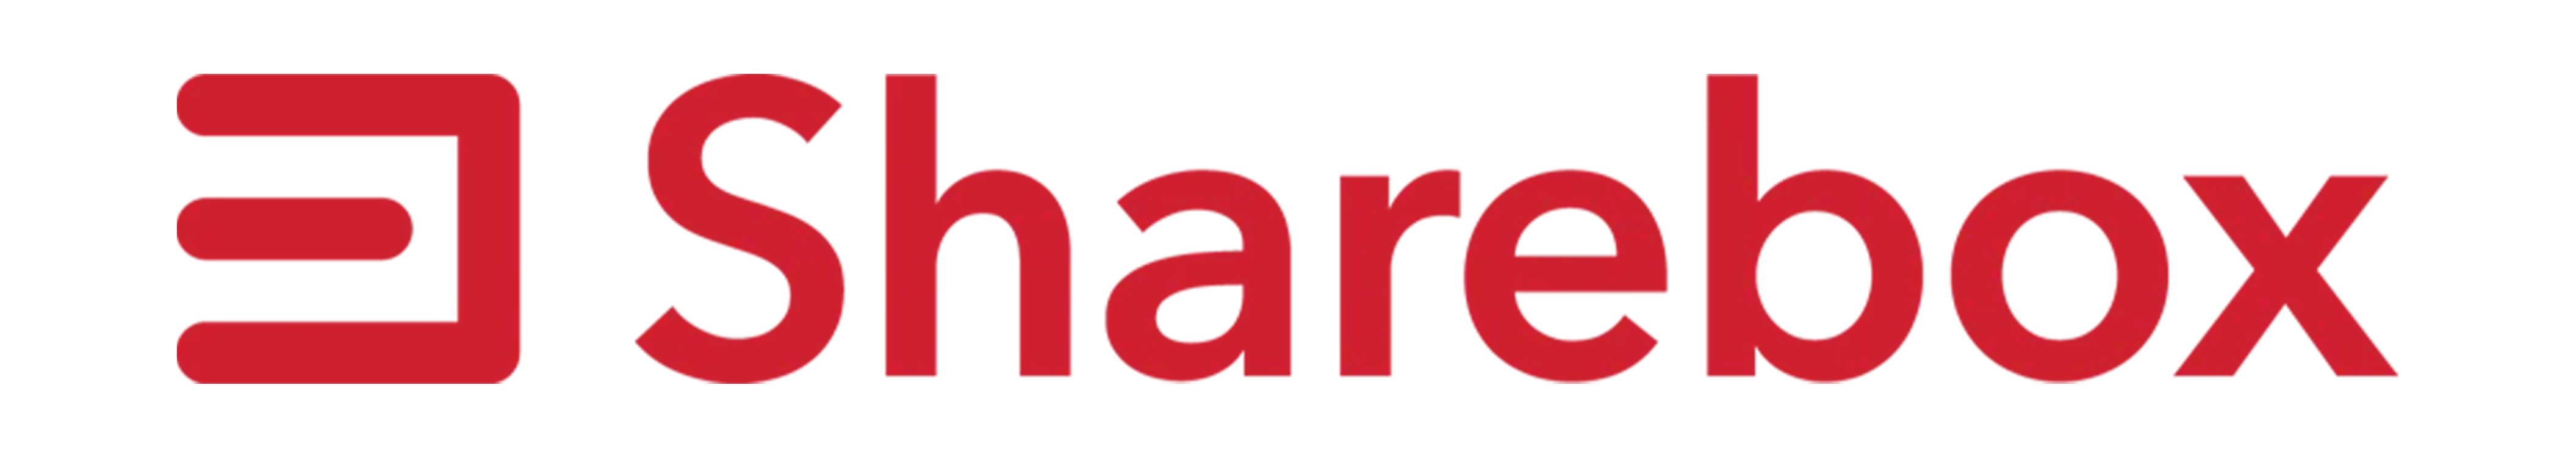 Sharebox_logo